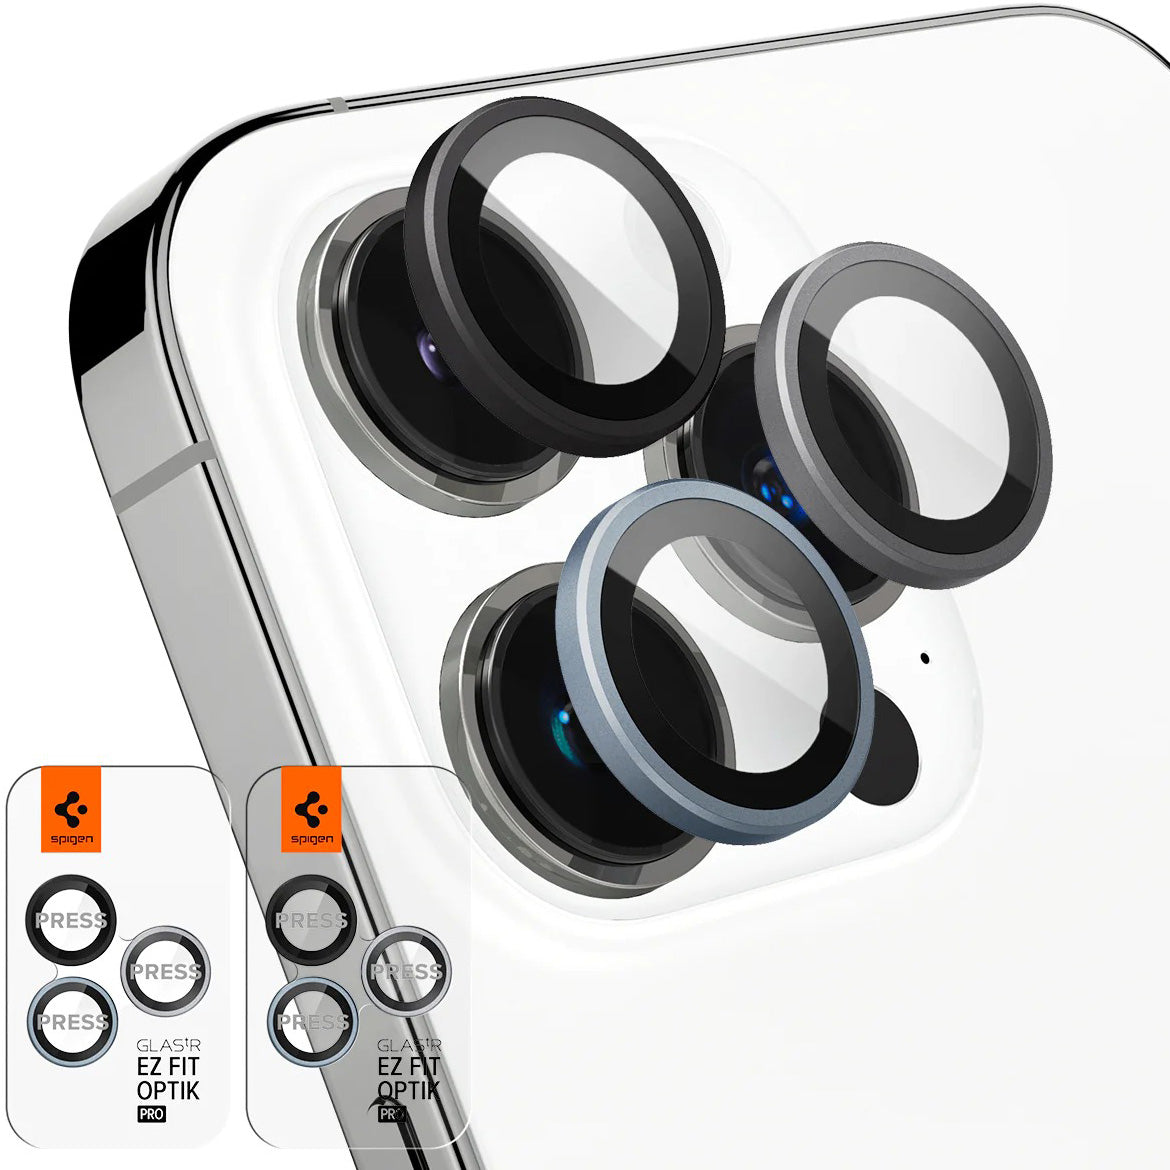 Glas für die Kamera Spigen Glas.tR Ez Fit Optik Pro 2-Pack für iPhone 14 Pro / 14 Pro Max, Multikolore (Zero One)